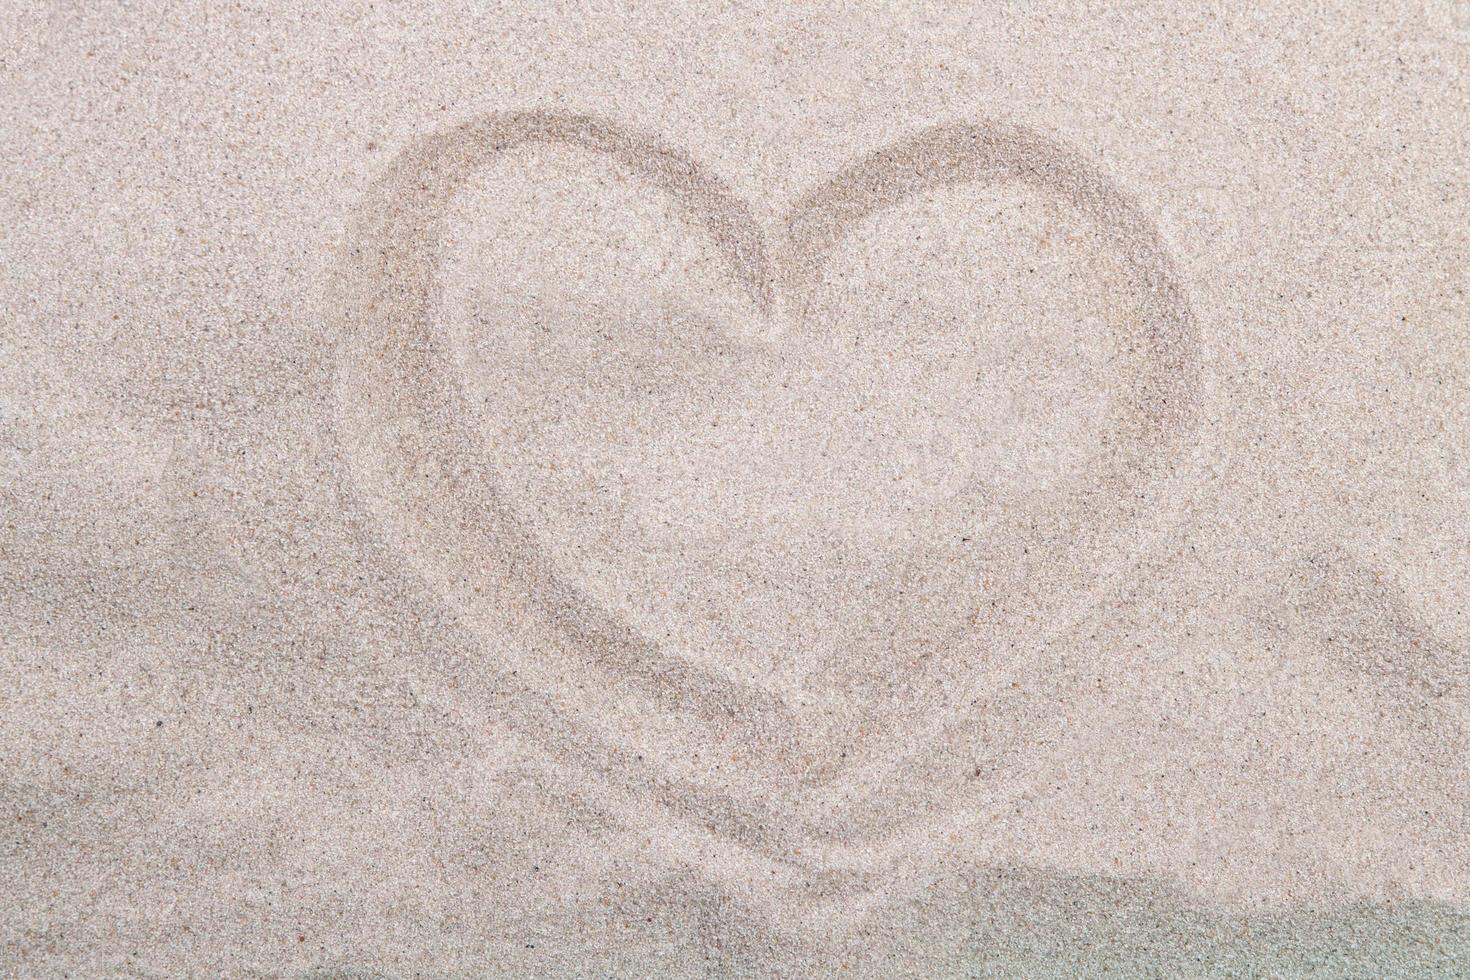 costa del mare. cuore di iscrizione sulla sabbia della spiaggia foto